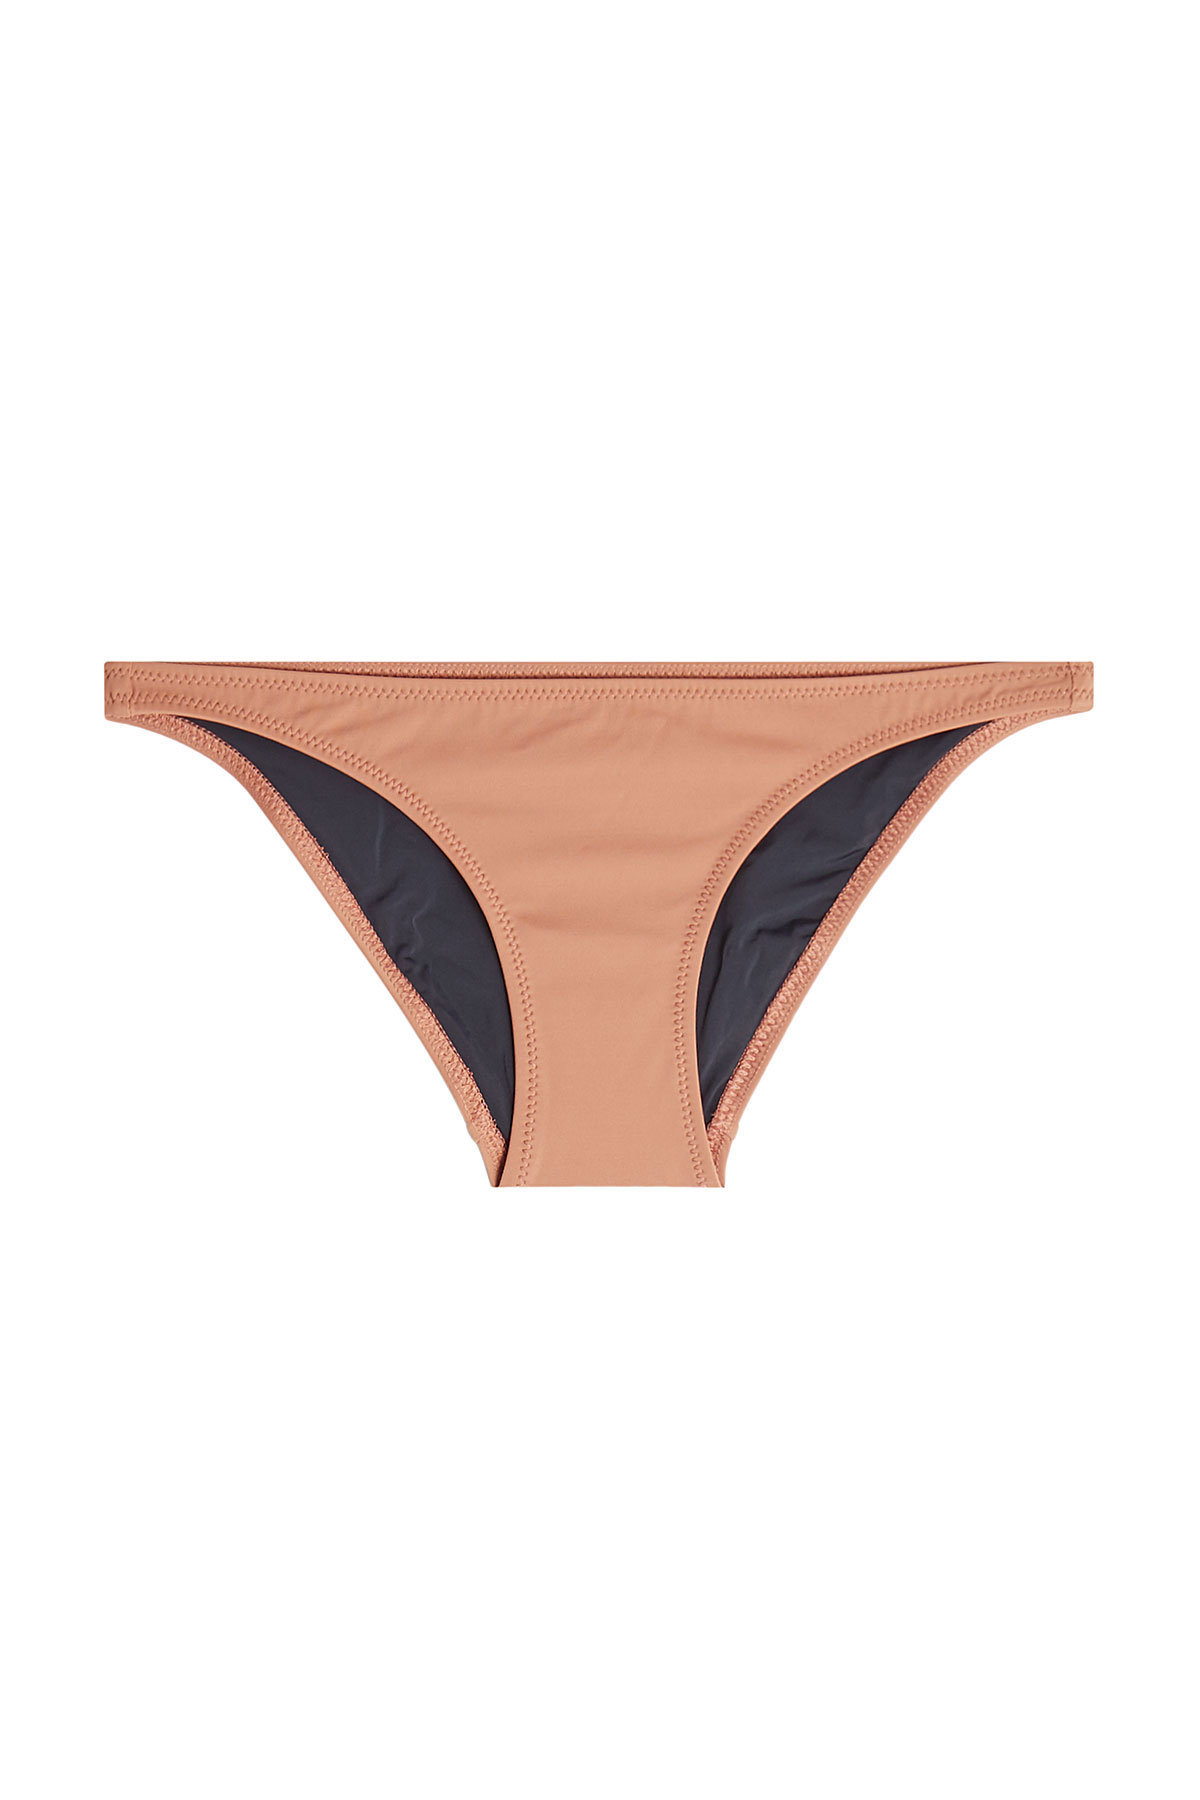 Solid & Striped - The Fiona Bikini Bottoms